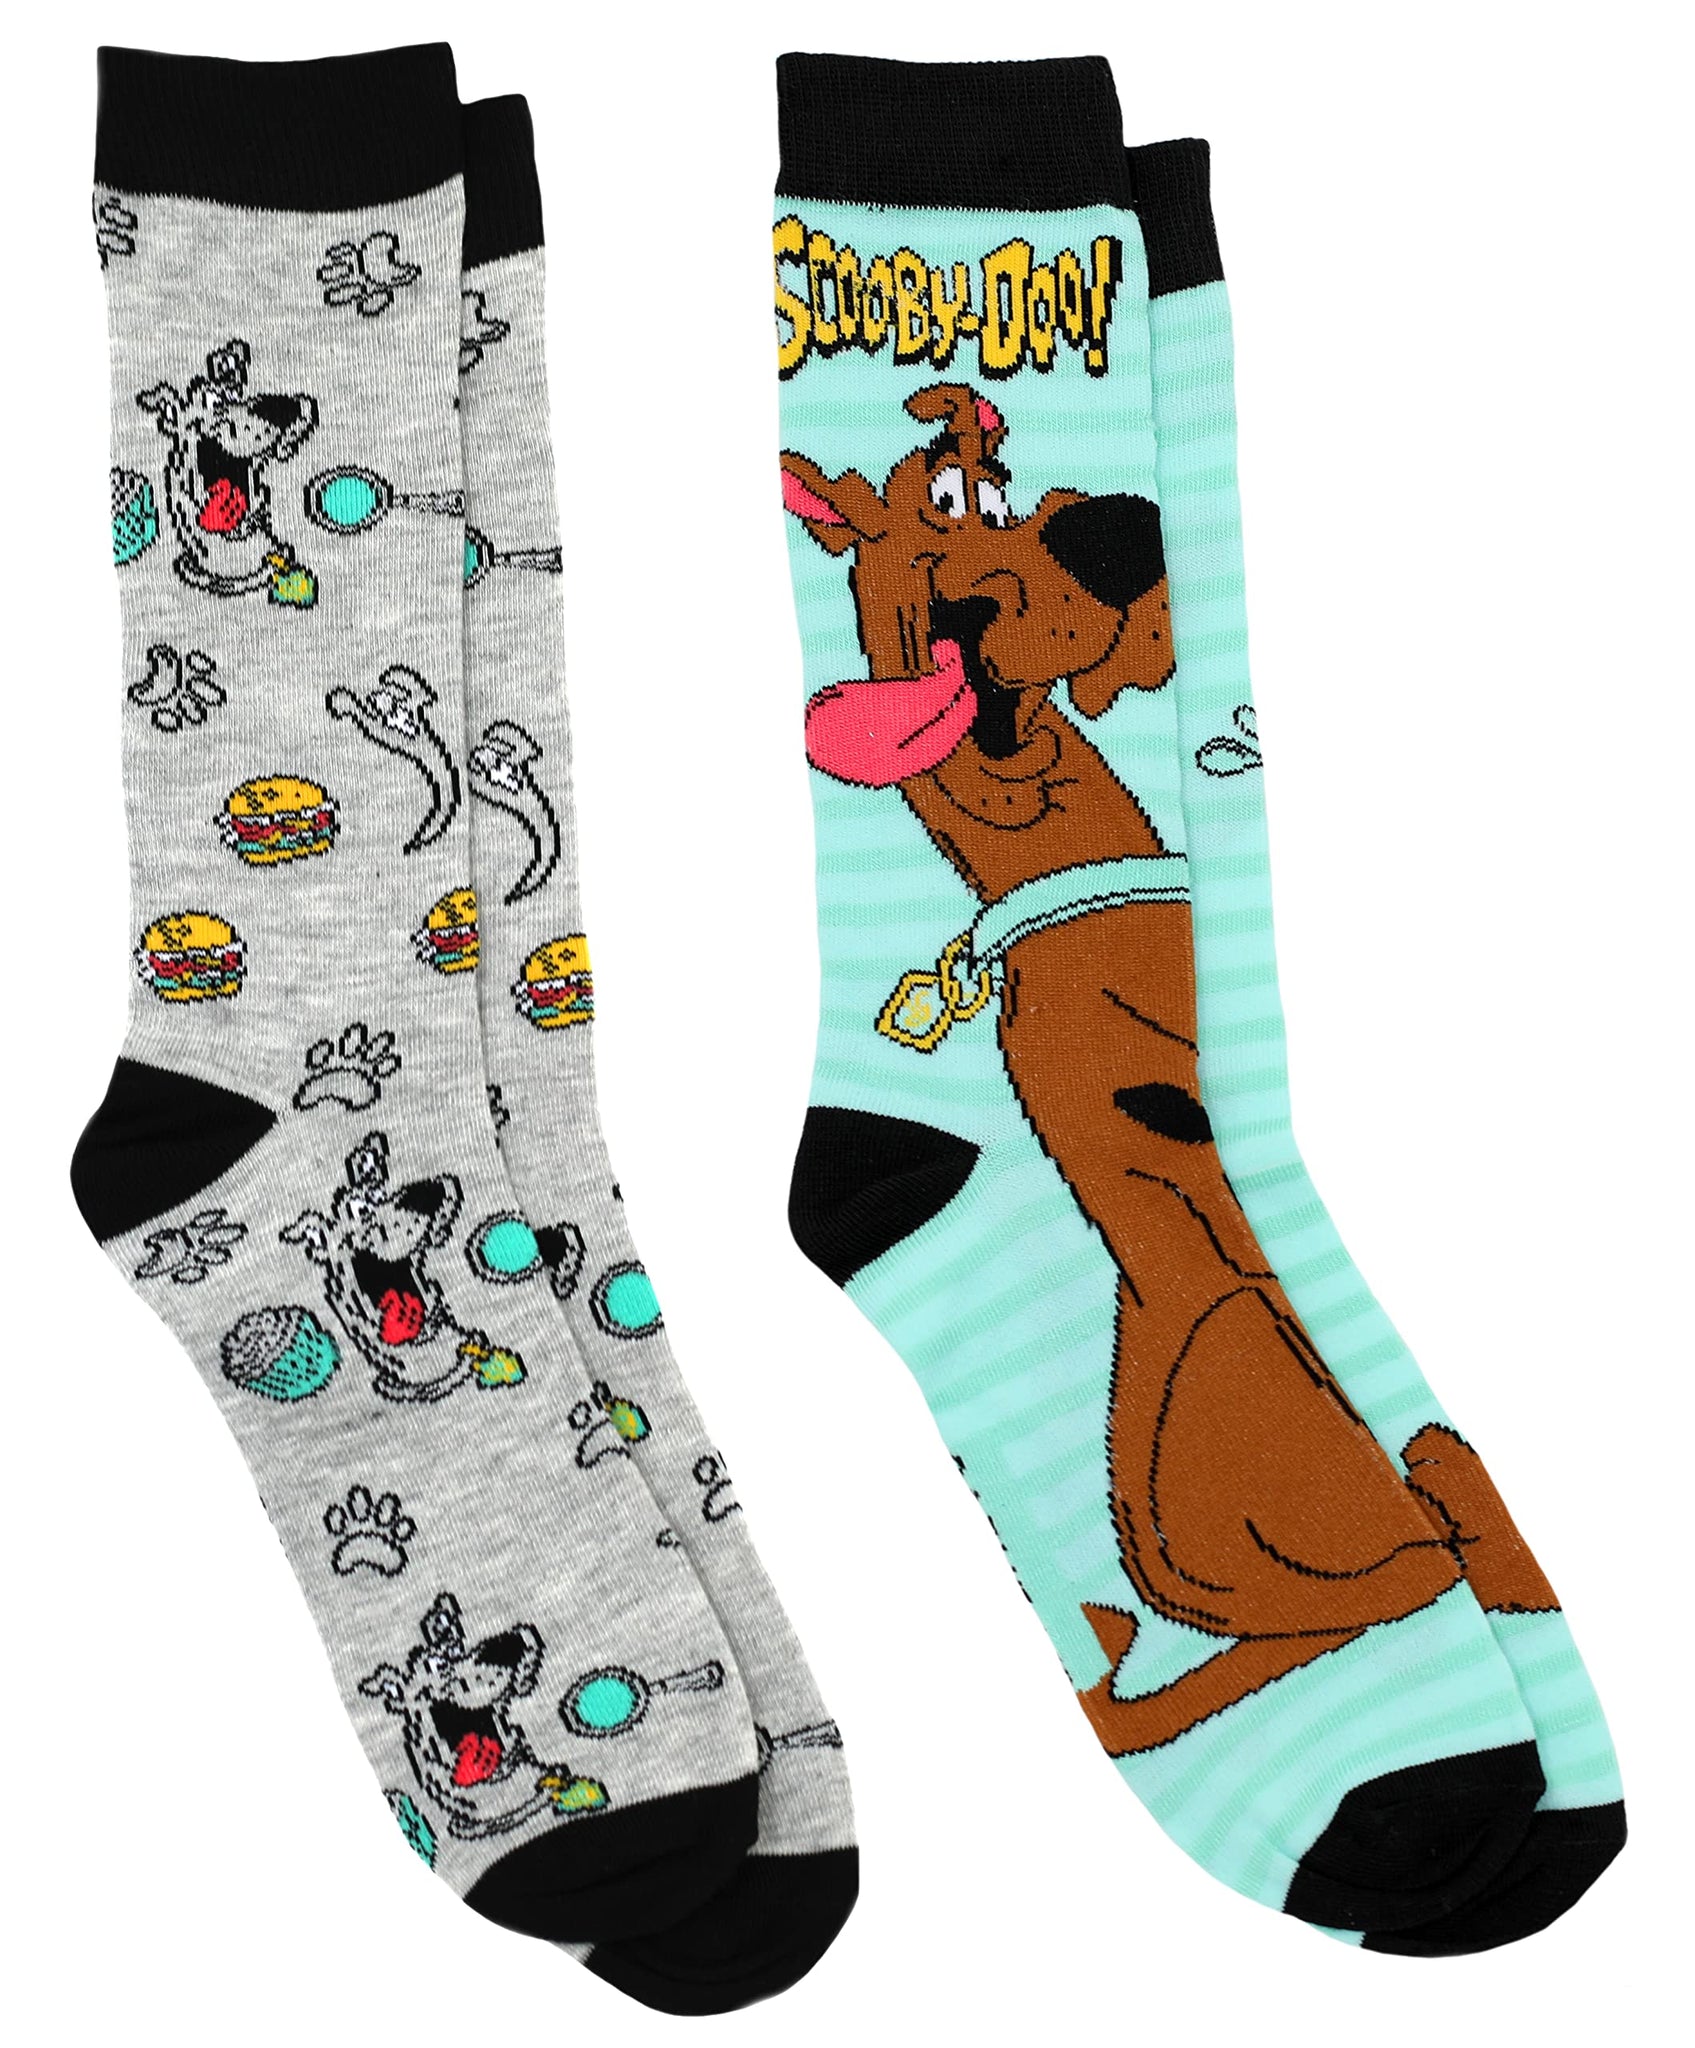 Scooby-Doo Men's 2 Pair Novelty Crew Socks Shoe Size 6-12